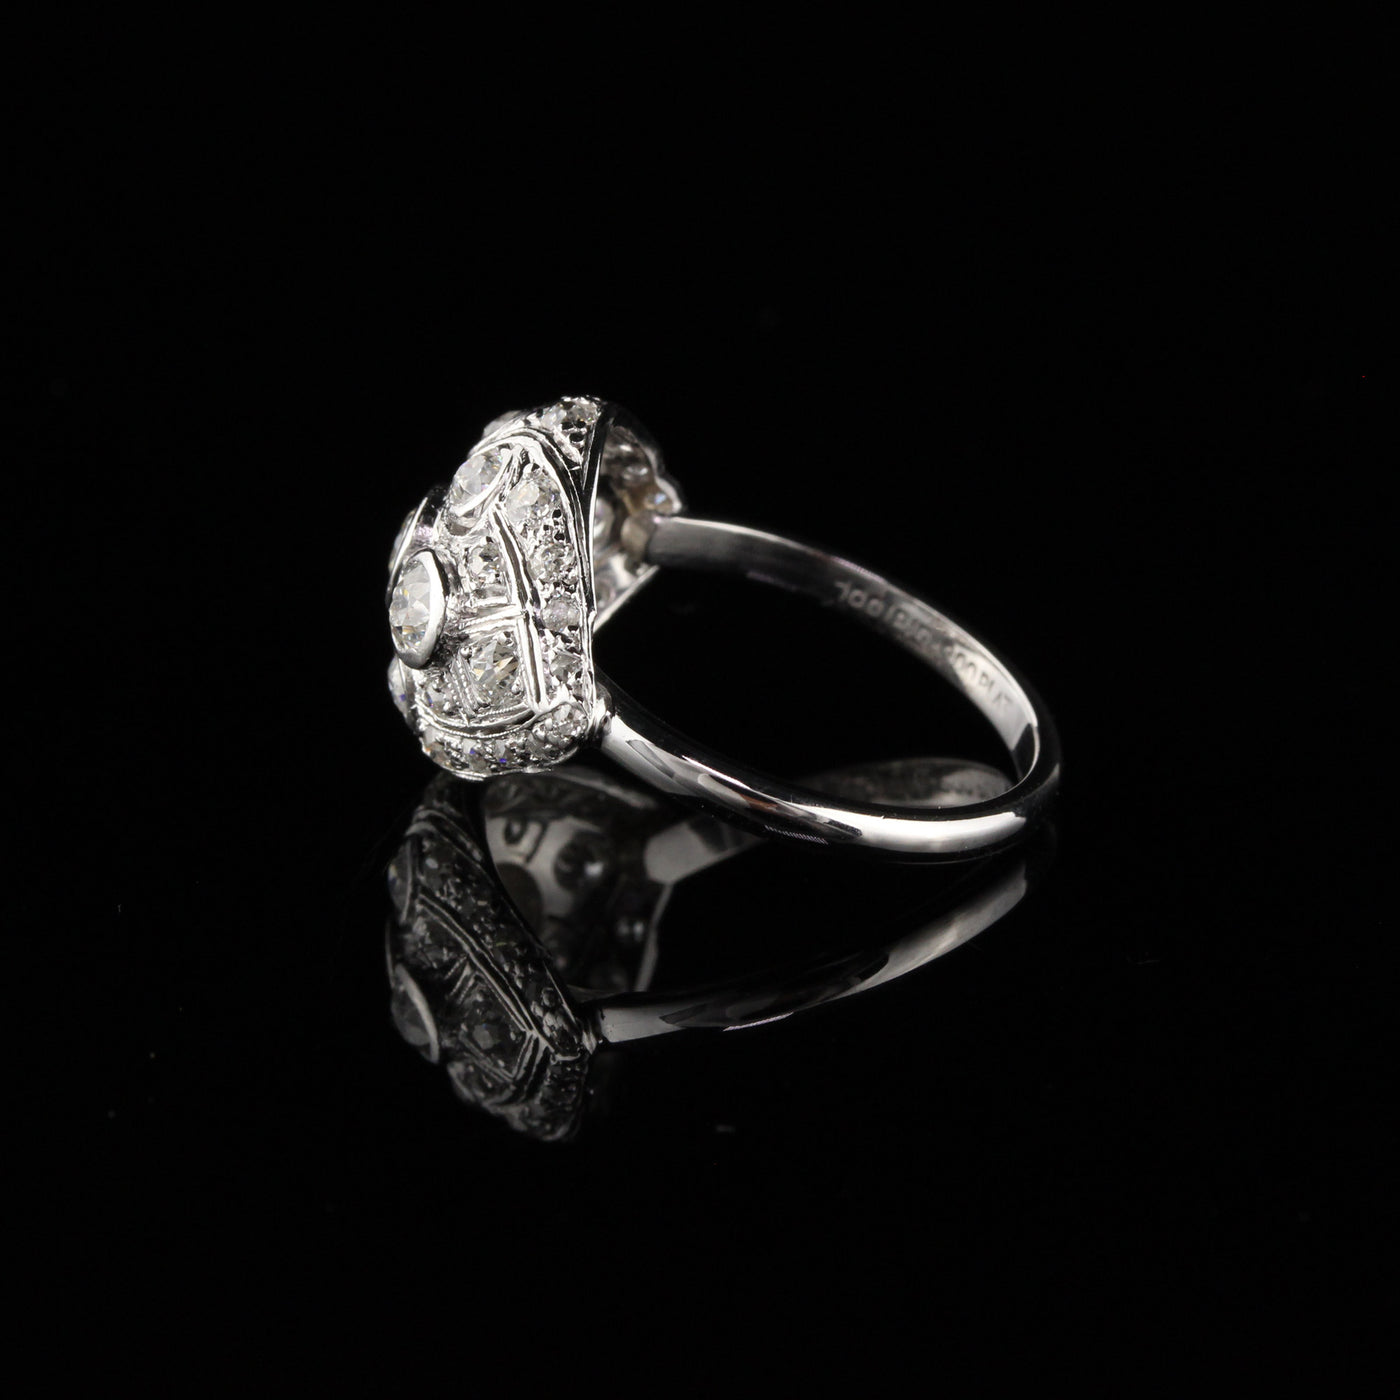 Antique Art Deco Platinum Old Euro Cut Diamond Engagement Ring